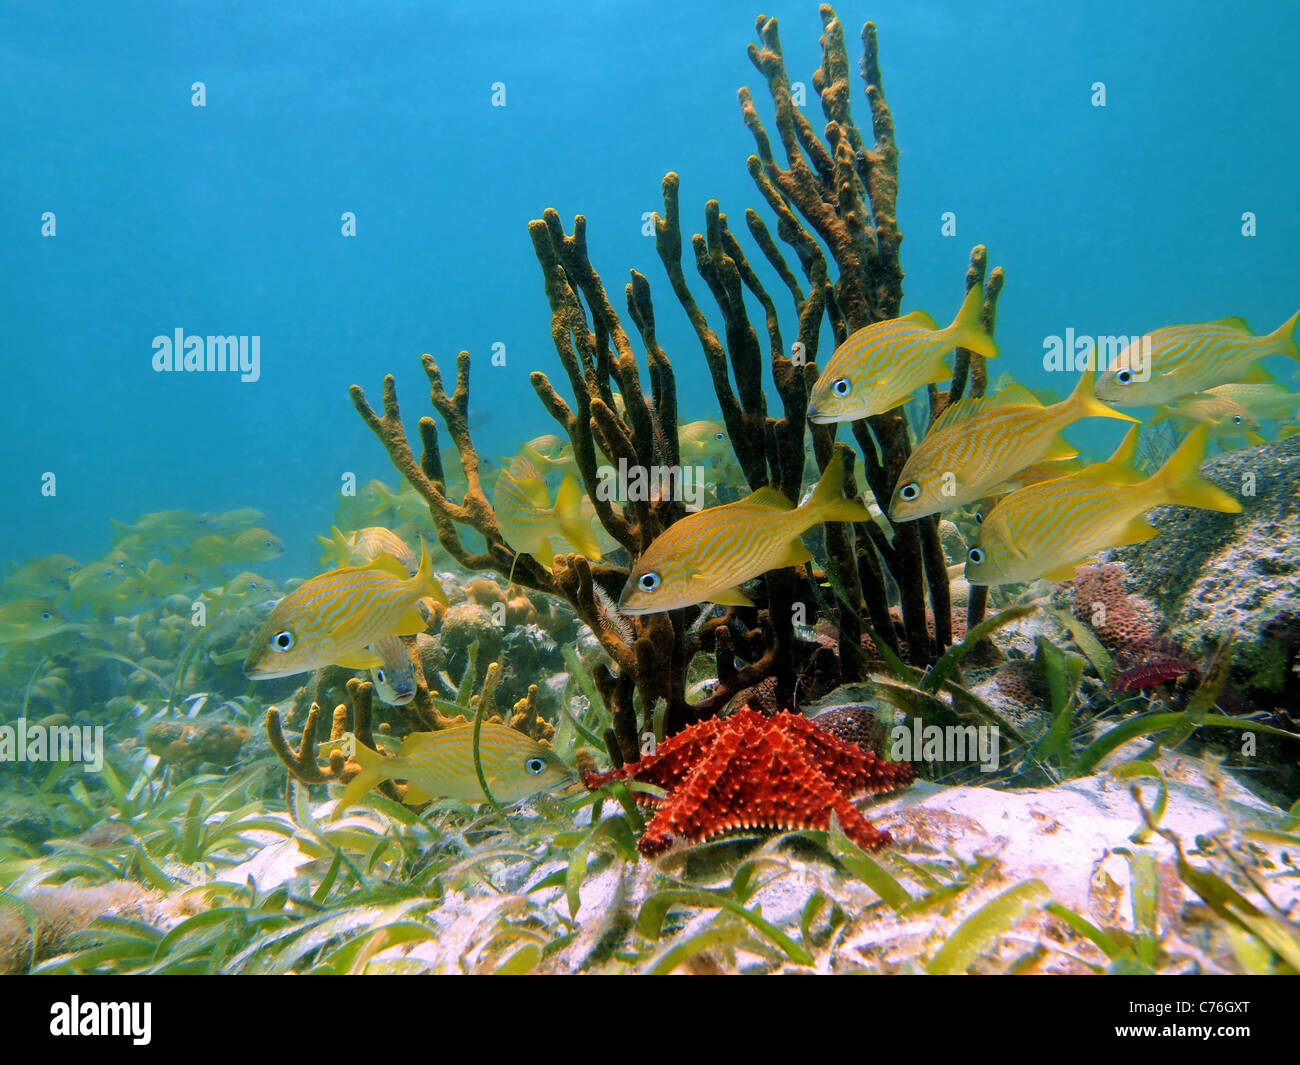 Arrecifes de coral y peces tropicales en el mar Caribe, Costa Rica Foto de stock